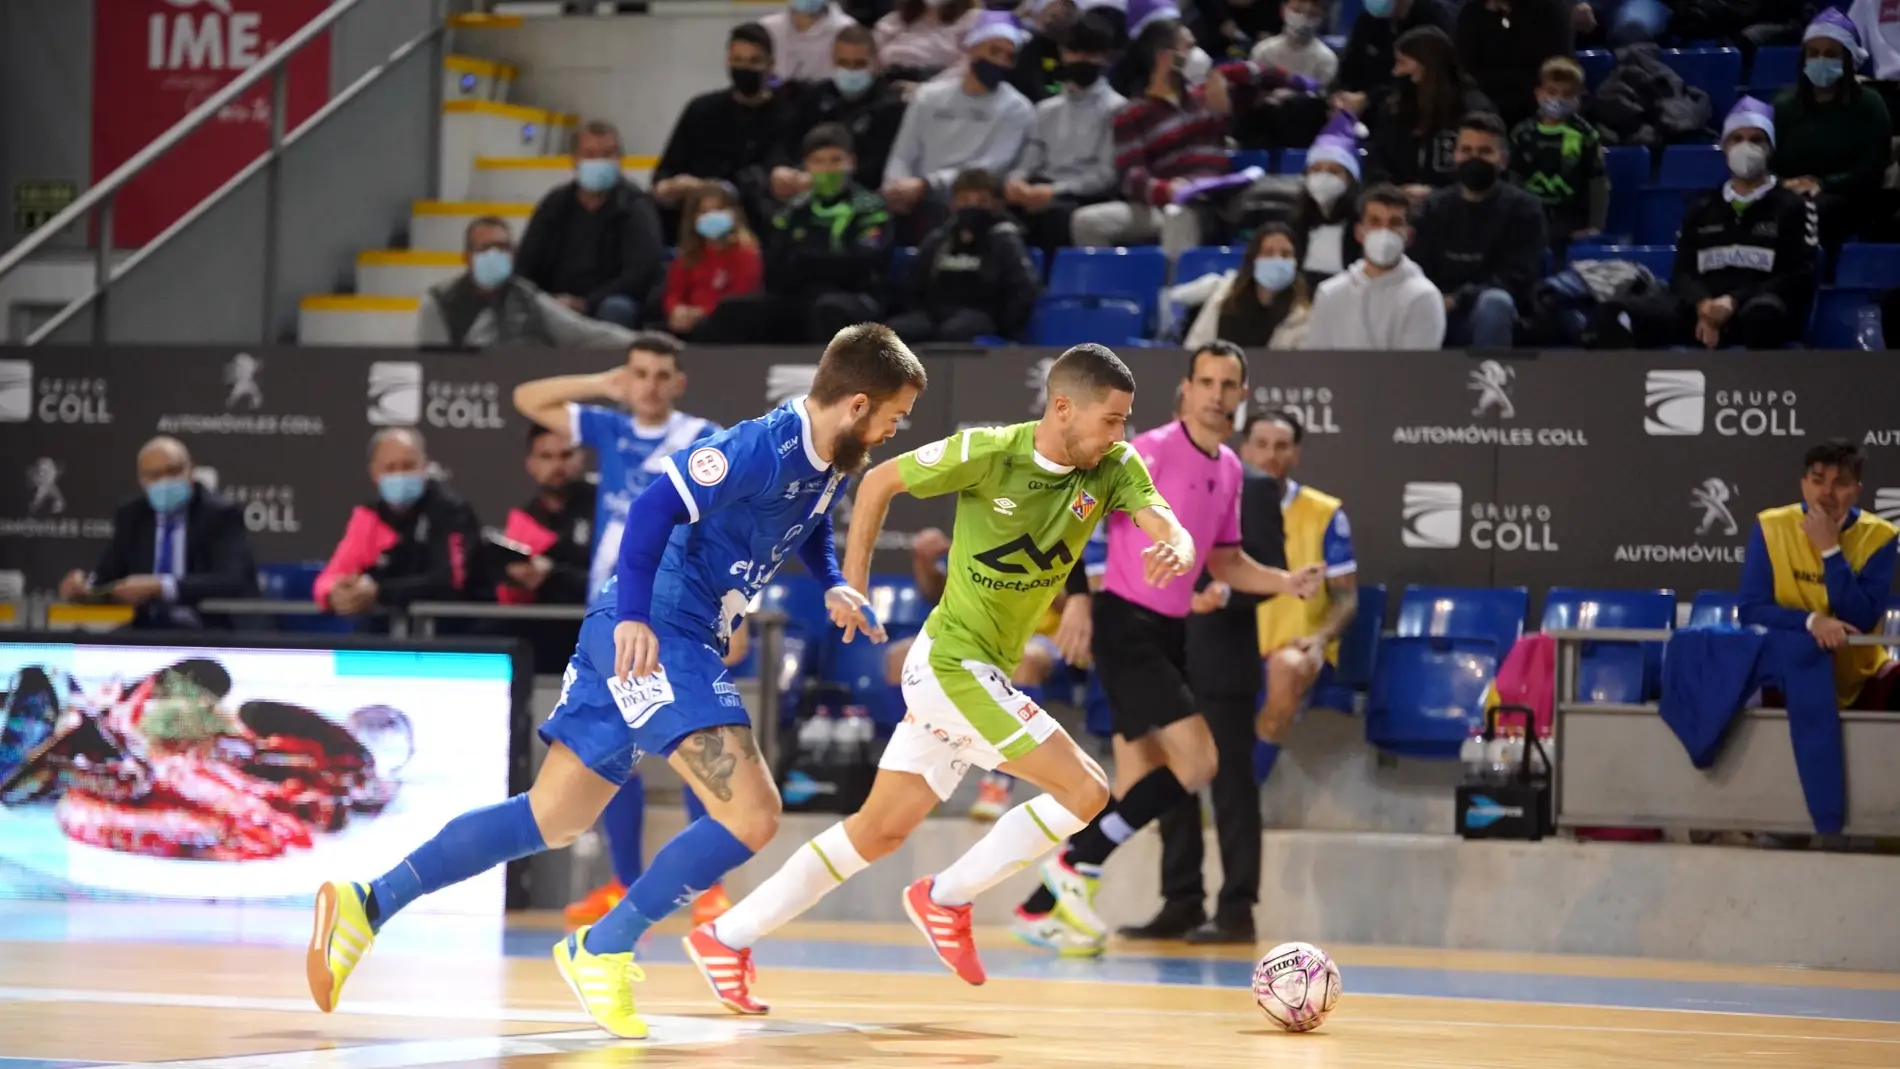 El Palma Futsal golea al Manzanares